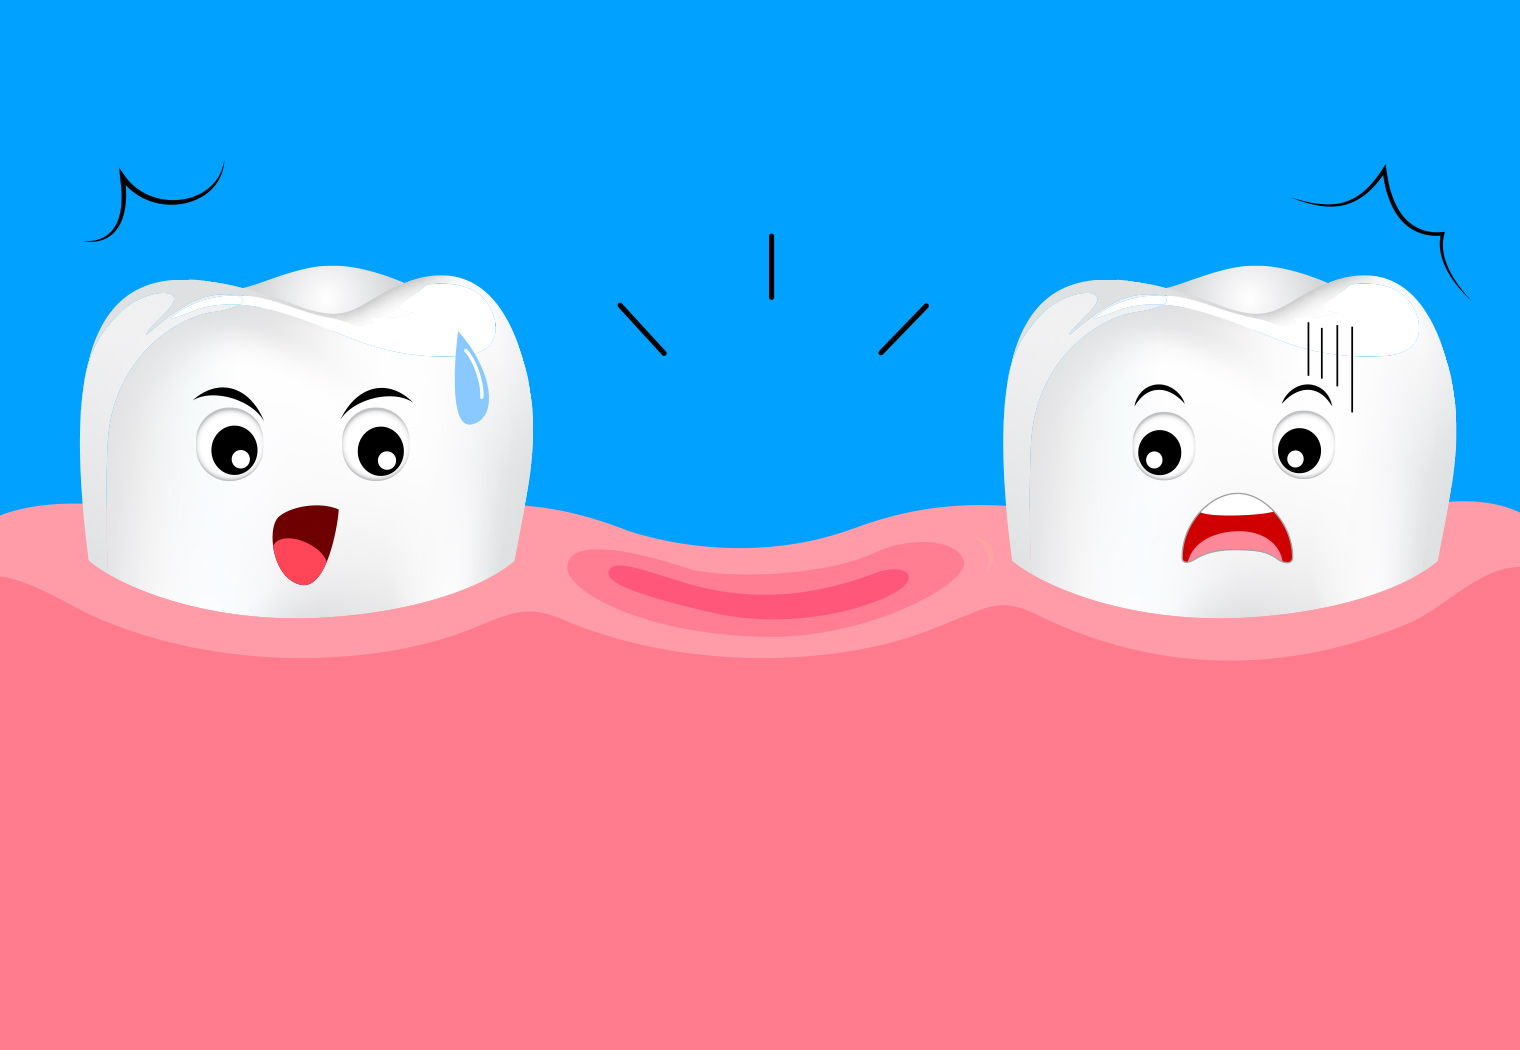 sprijecite gubitak zdravog zuba oralna higijena curasept paradontoza gingivitis